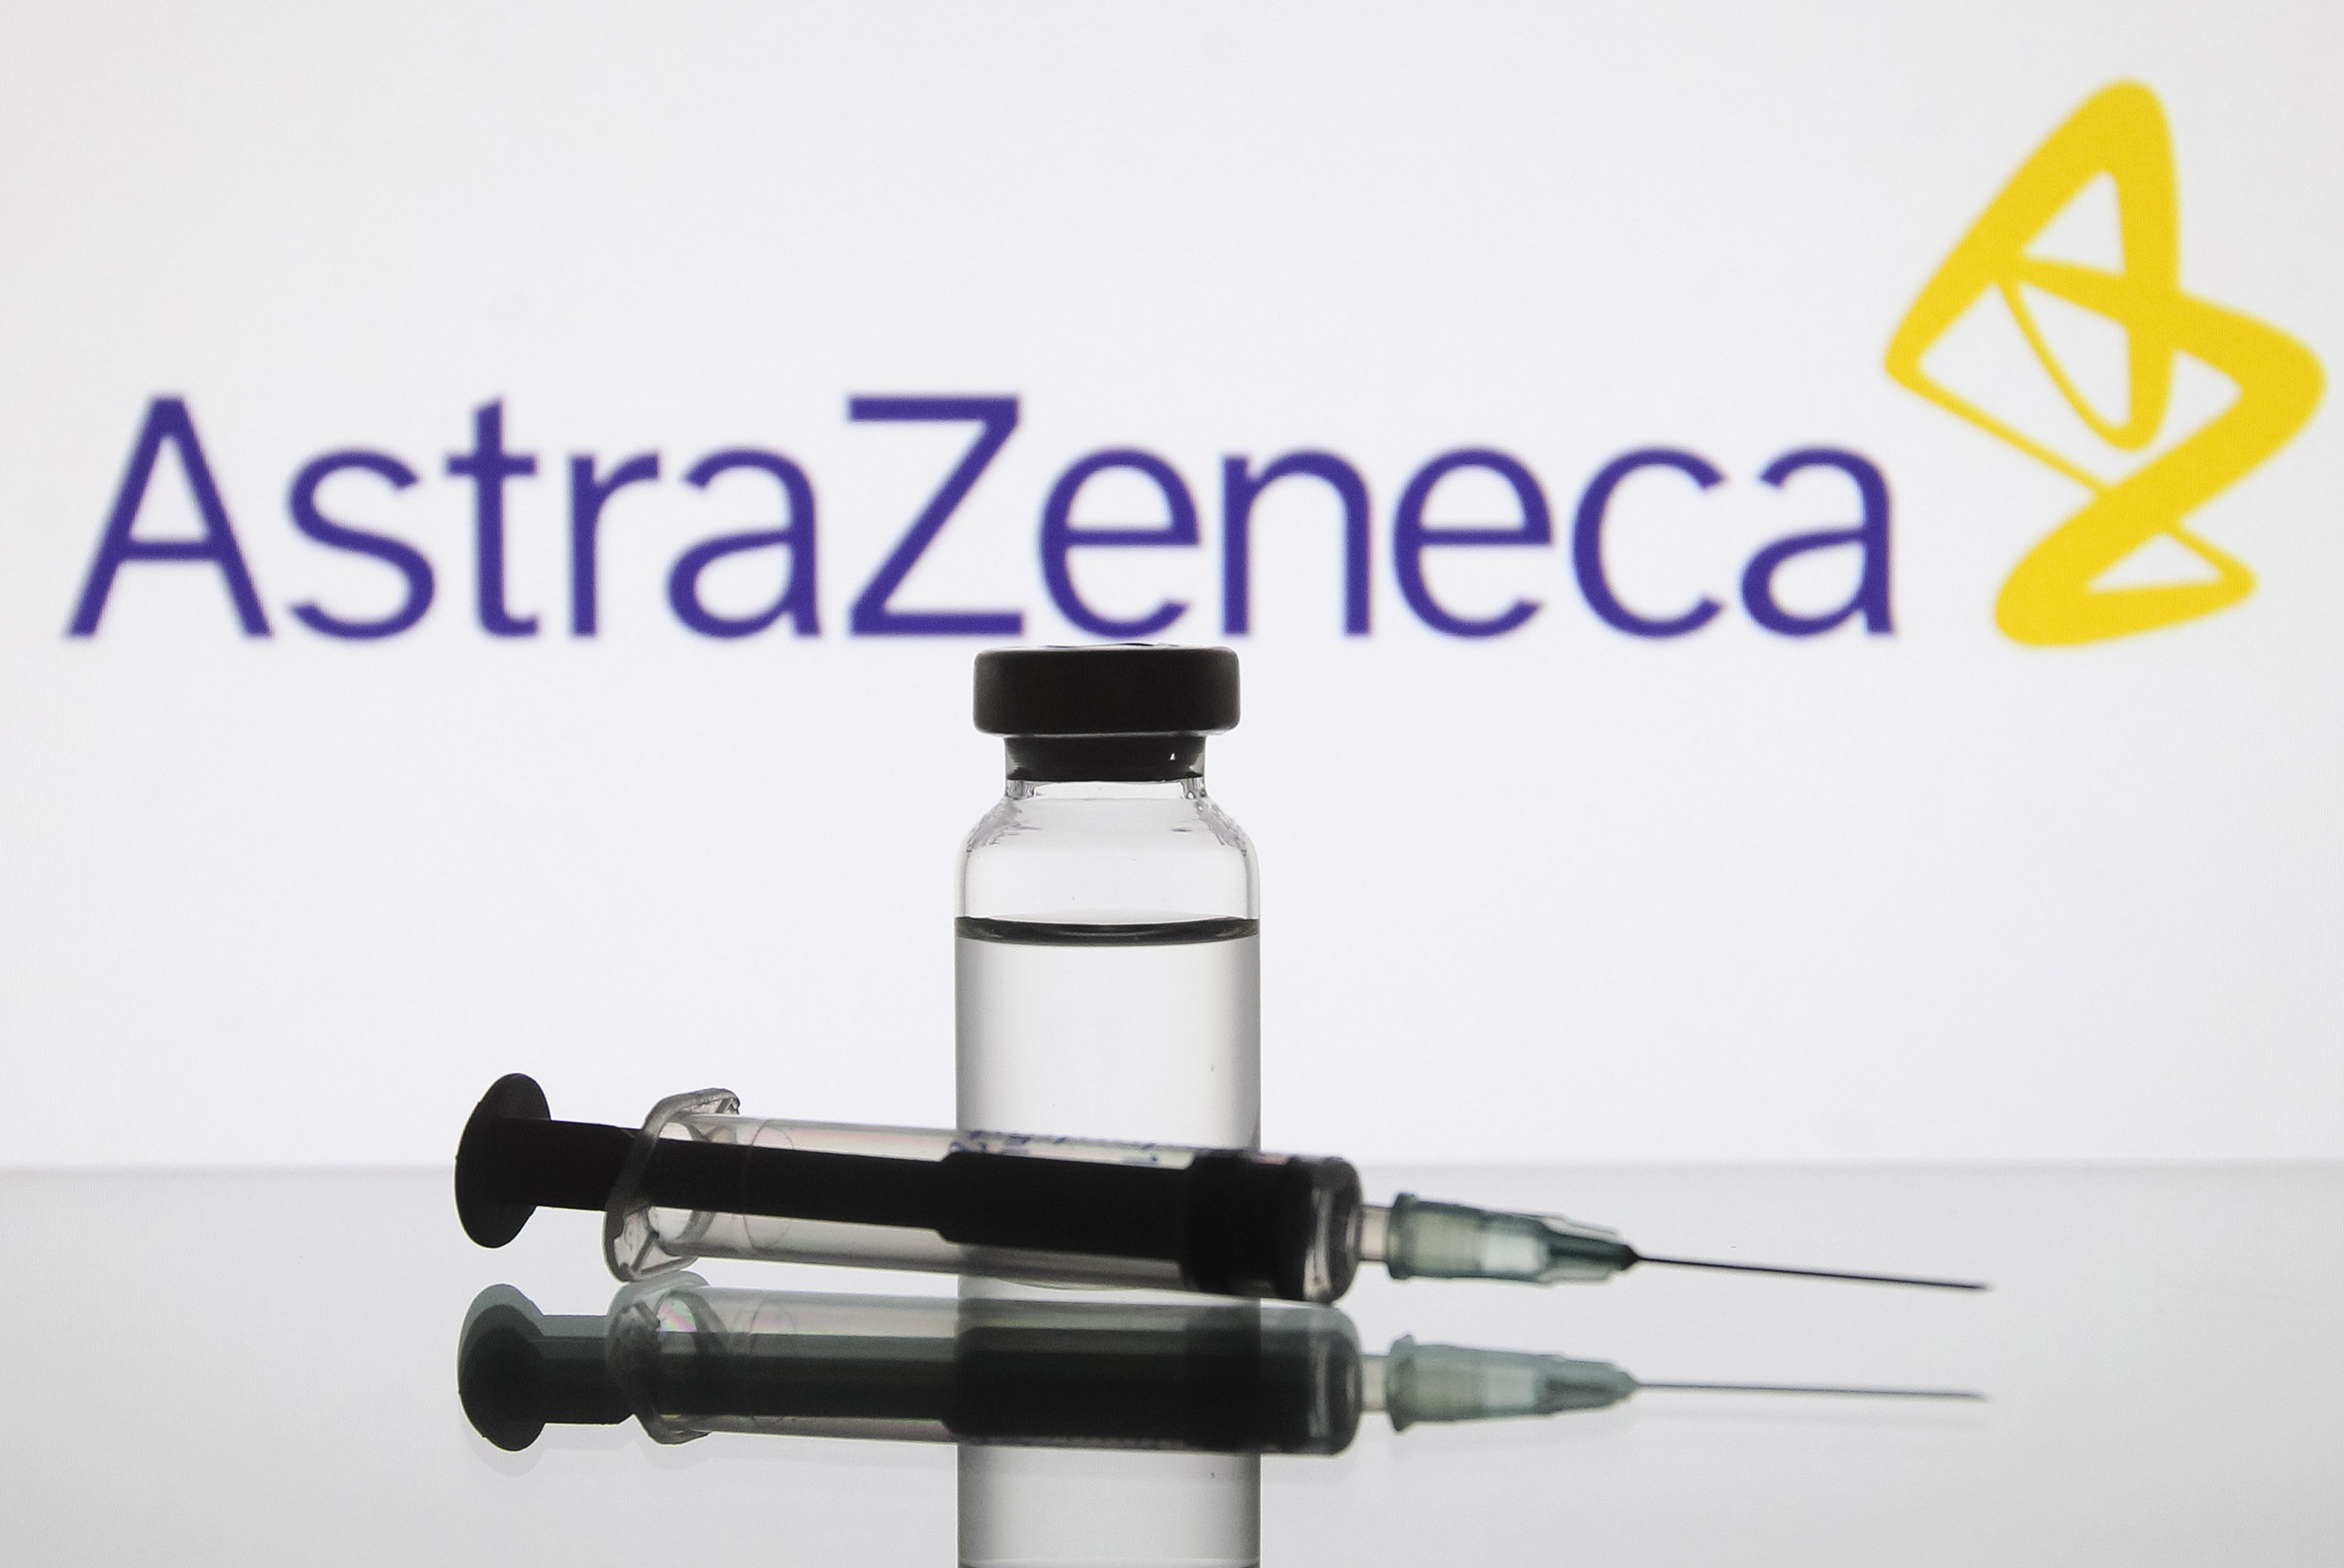 Németország is engedélyezte az AstraZeneca vakcináját a 65 év felettieknek